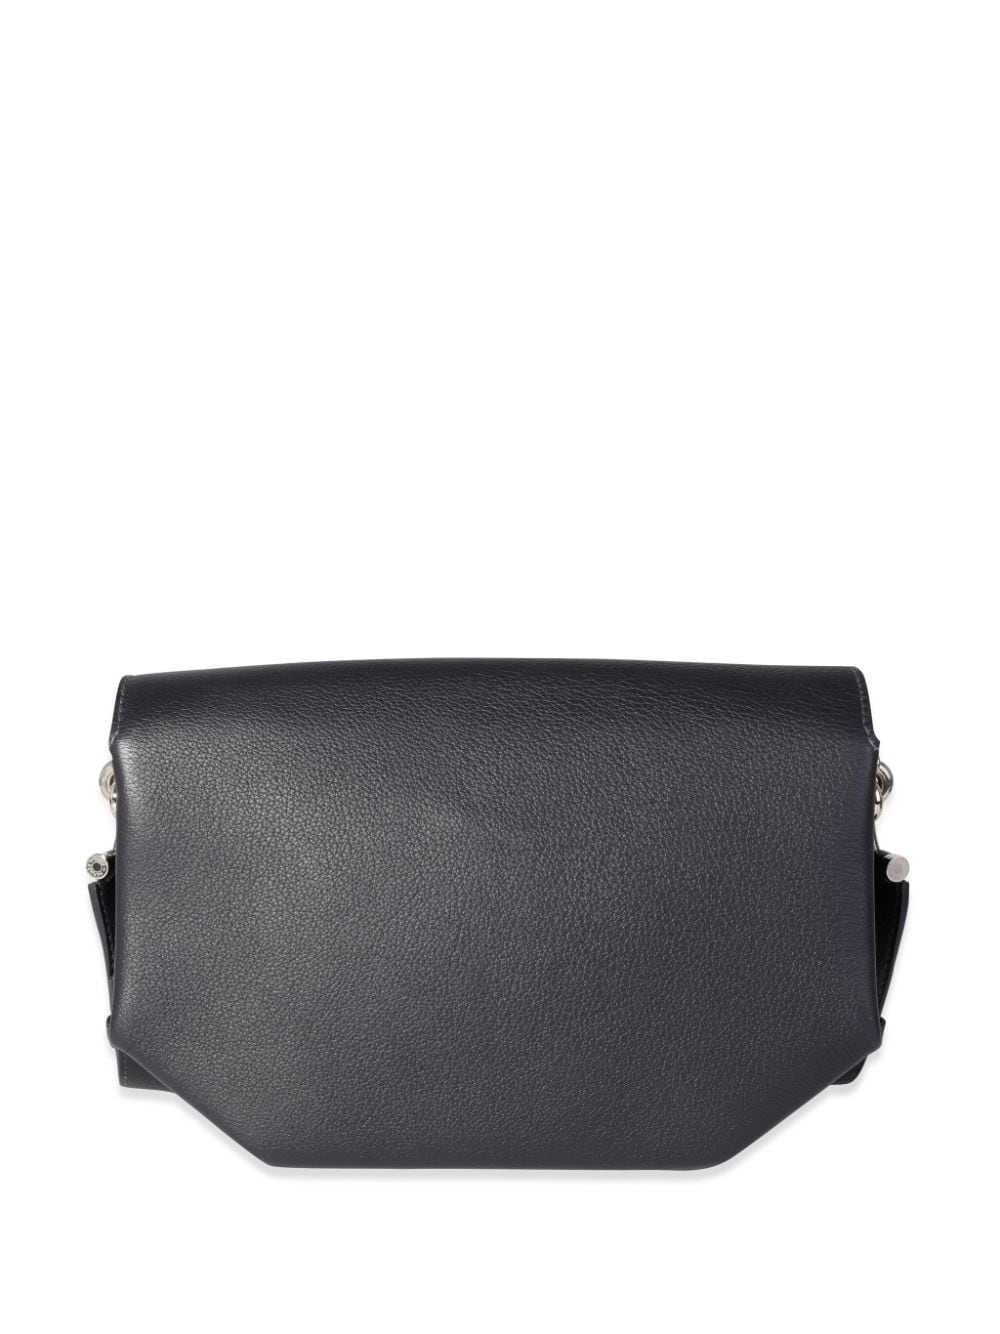 Hermès Pre-Owned 2017 Opli 24 shoulder bag - Black - image 2